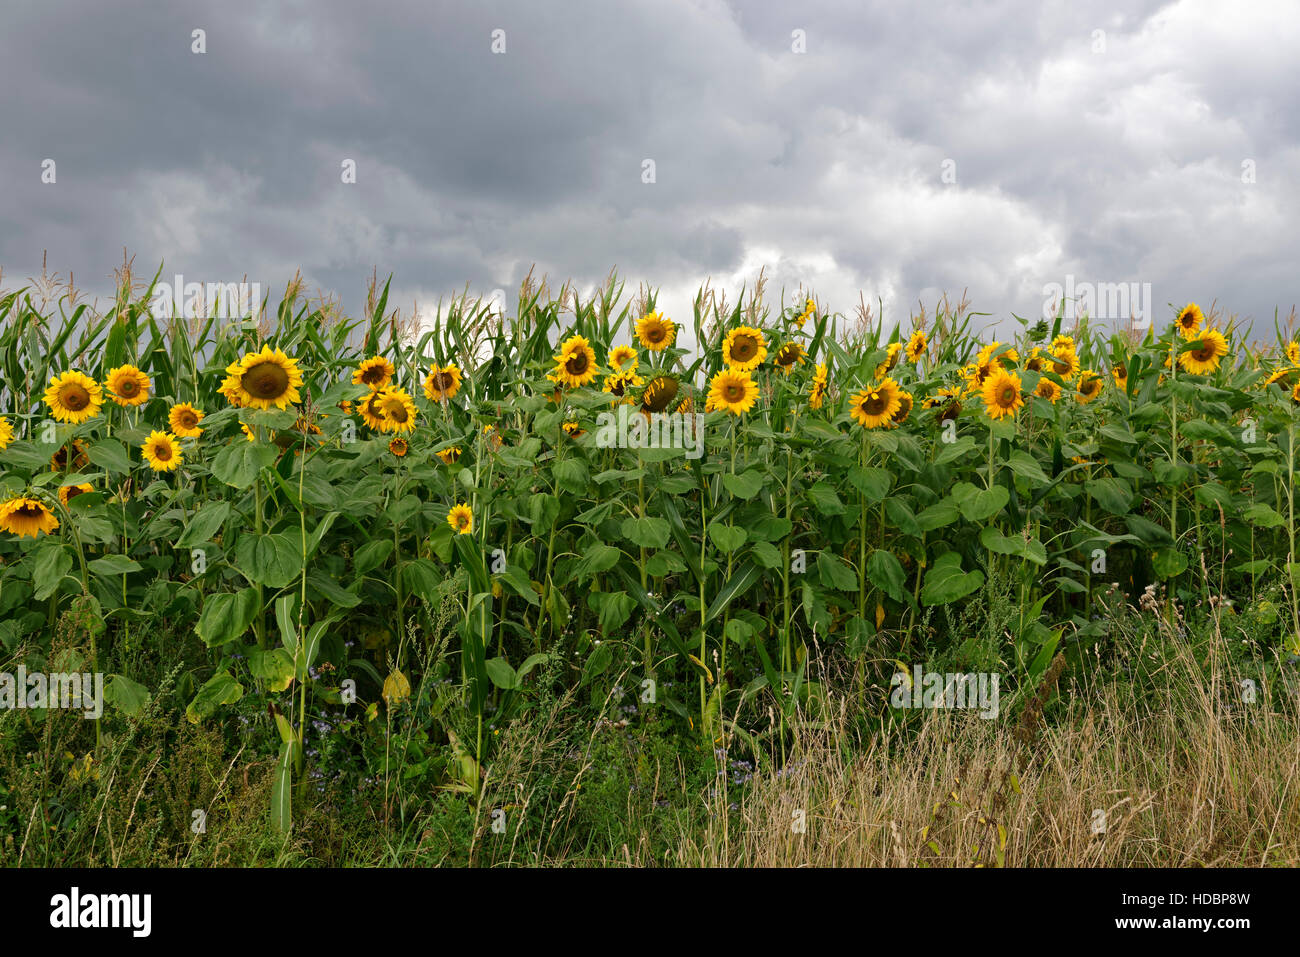 Sonnenblumen am Rande eines Maisfeldes in der Nähe von Weenzen im ländlichen Landkreis Hildesheim, Niedersachsen, Deutschland Stockfoto